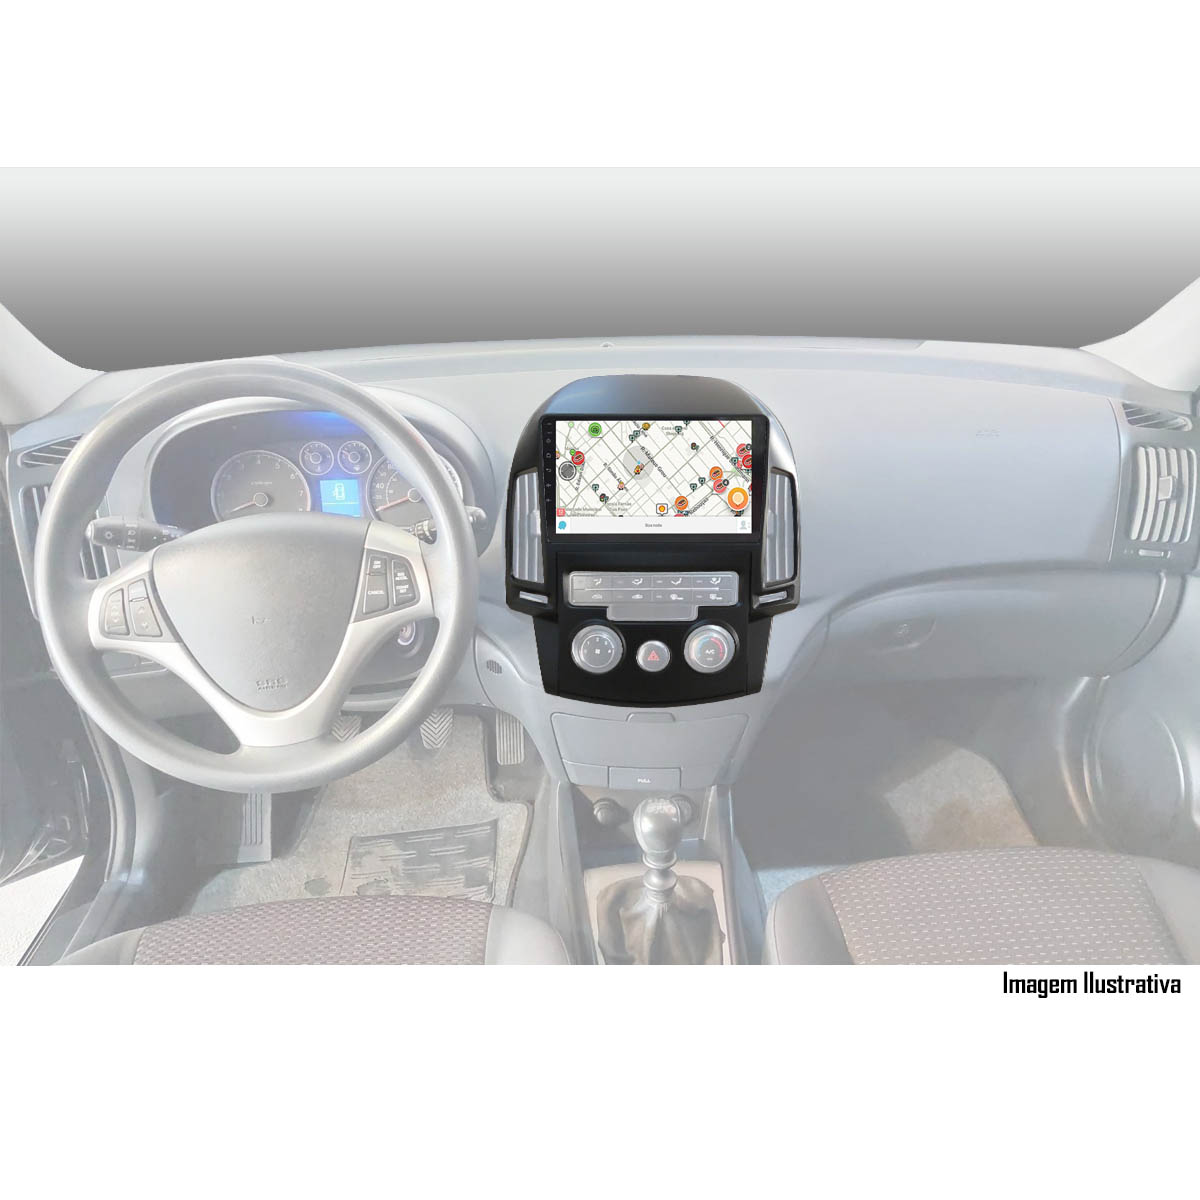 Multimídia 9" Hyundai I30 2009 até 2013 Espelhamento USB Bluetooth + Câmera de Ré + Moldura + Adaptador de Antena + Interface Comando de Volante